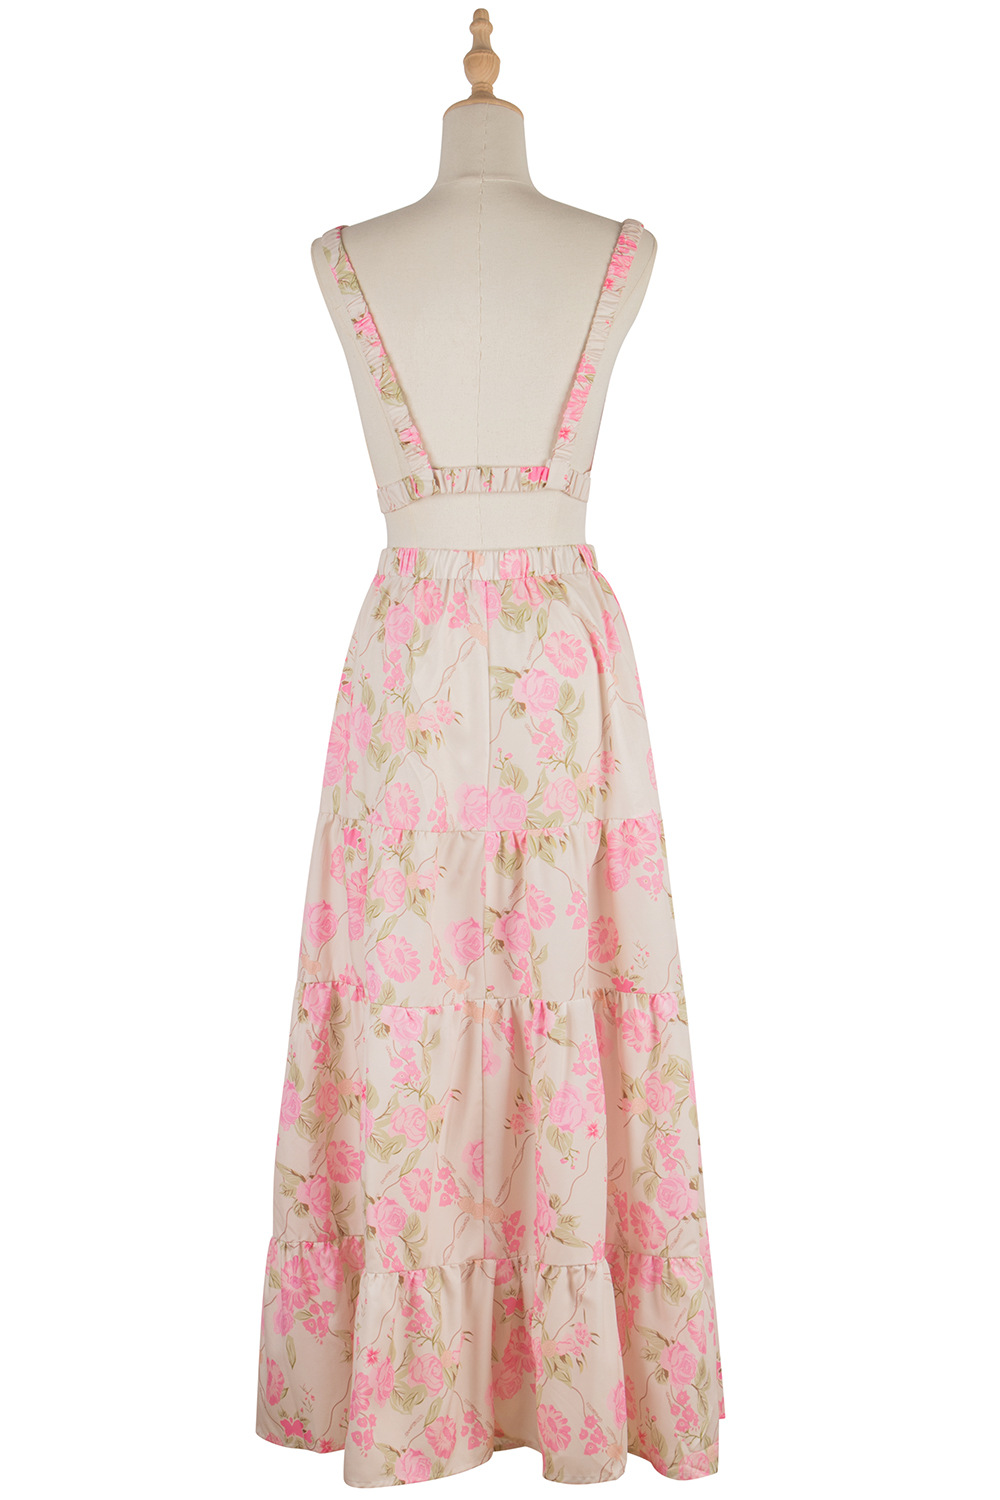 Spring and summer slim skirt printing sling dress for women